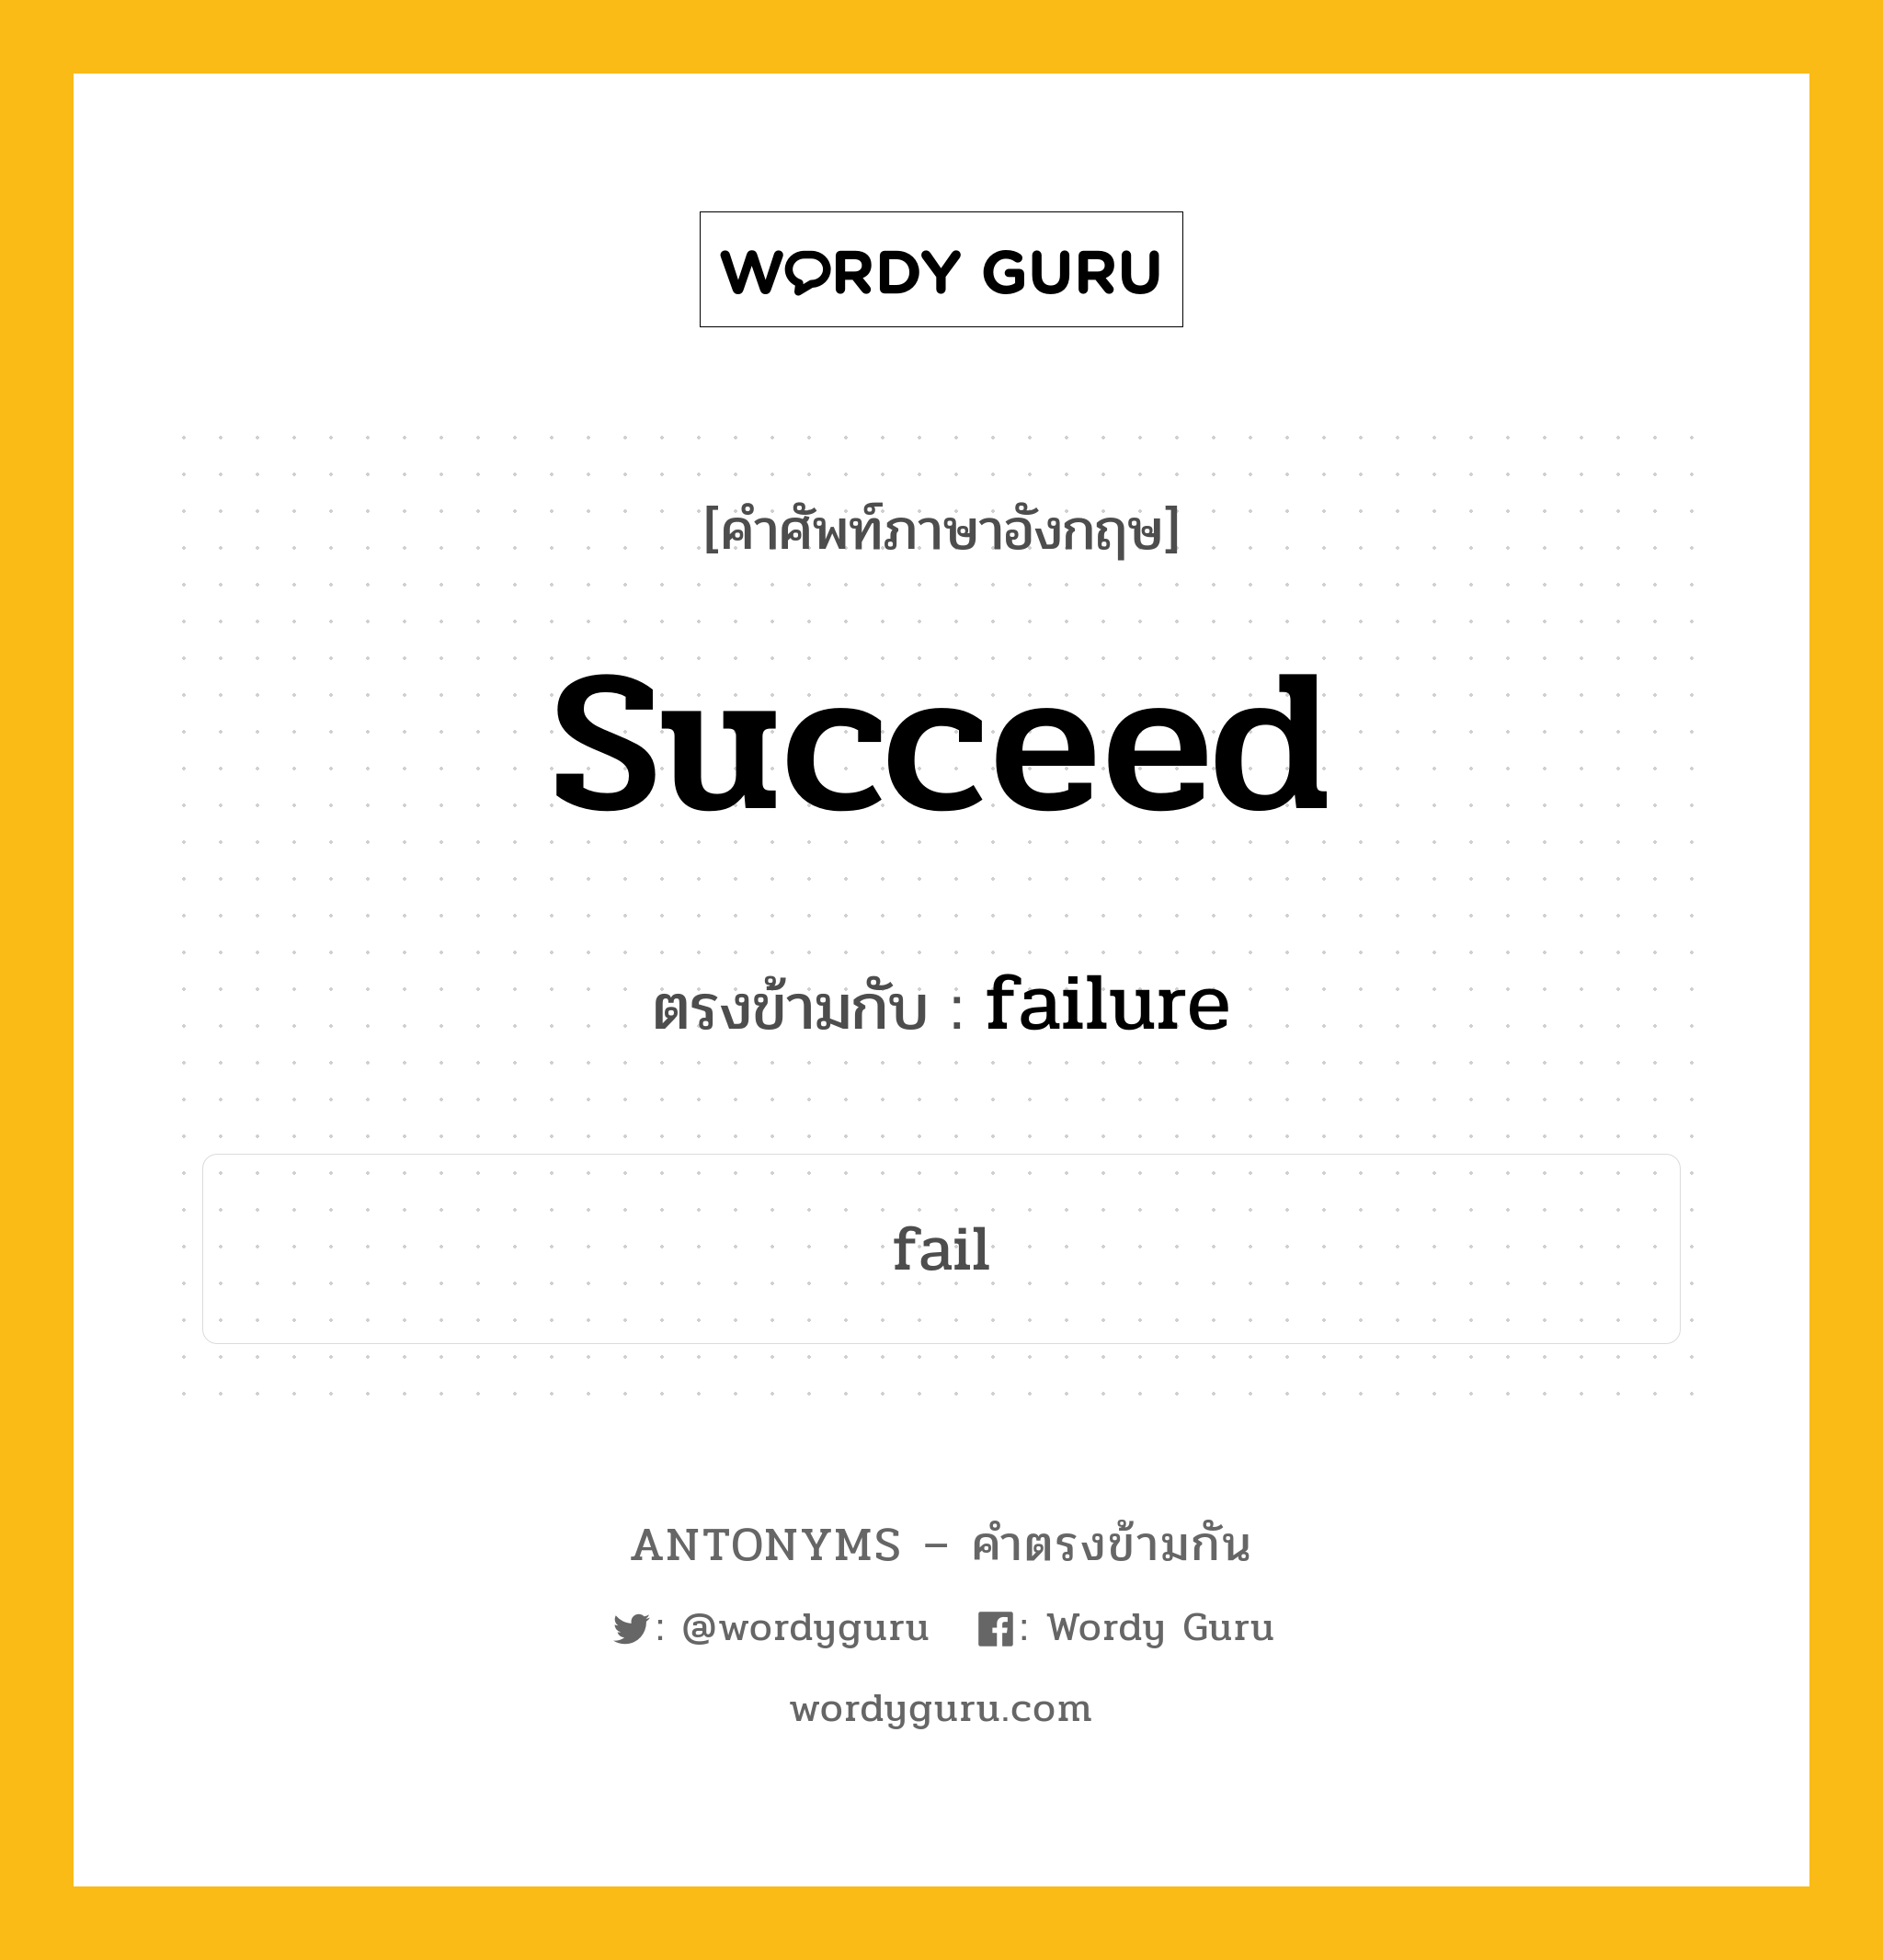 succeed เป็นคำตรงข้ามกับคำไหนบ้าง?, คำศัพท์ภาษาอังกฤษ succeed ตรงข้ามกับ failure หมวด failure